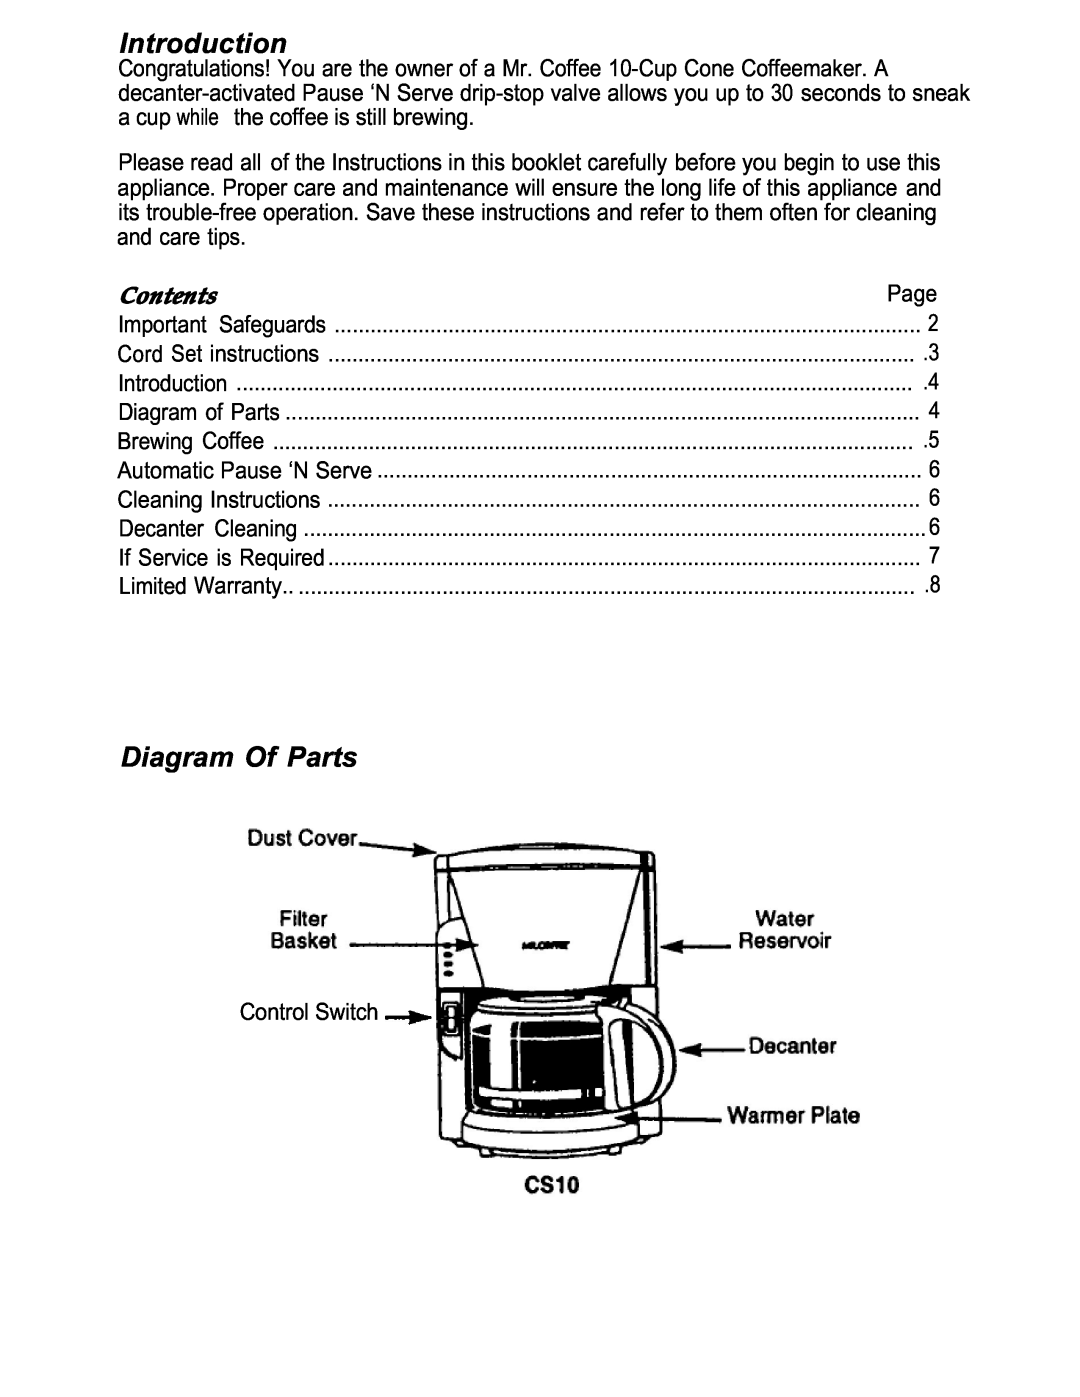 Capresso CS10 manual Introduction, Diagram Of Parts, Contents 